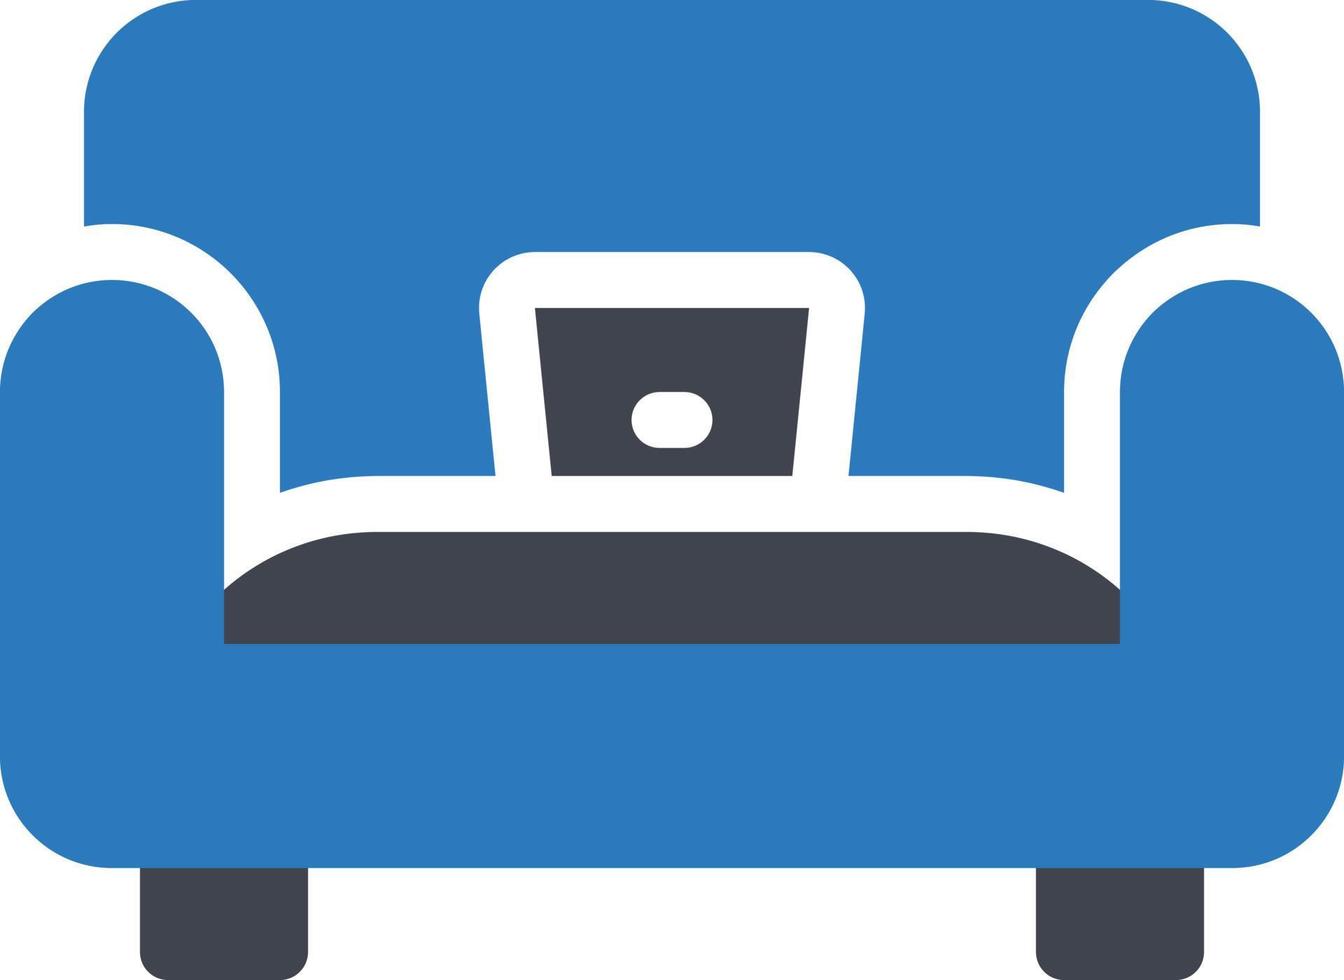 illustrazione vettoriale del divano su uno sfondo. simboli di qualità premium. icone vettoriali per il concetto e la progettazione grafica.